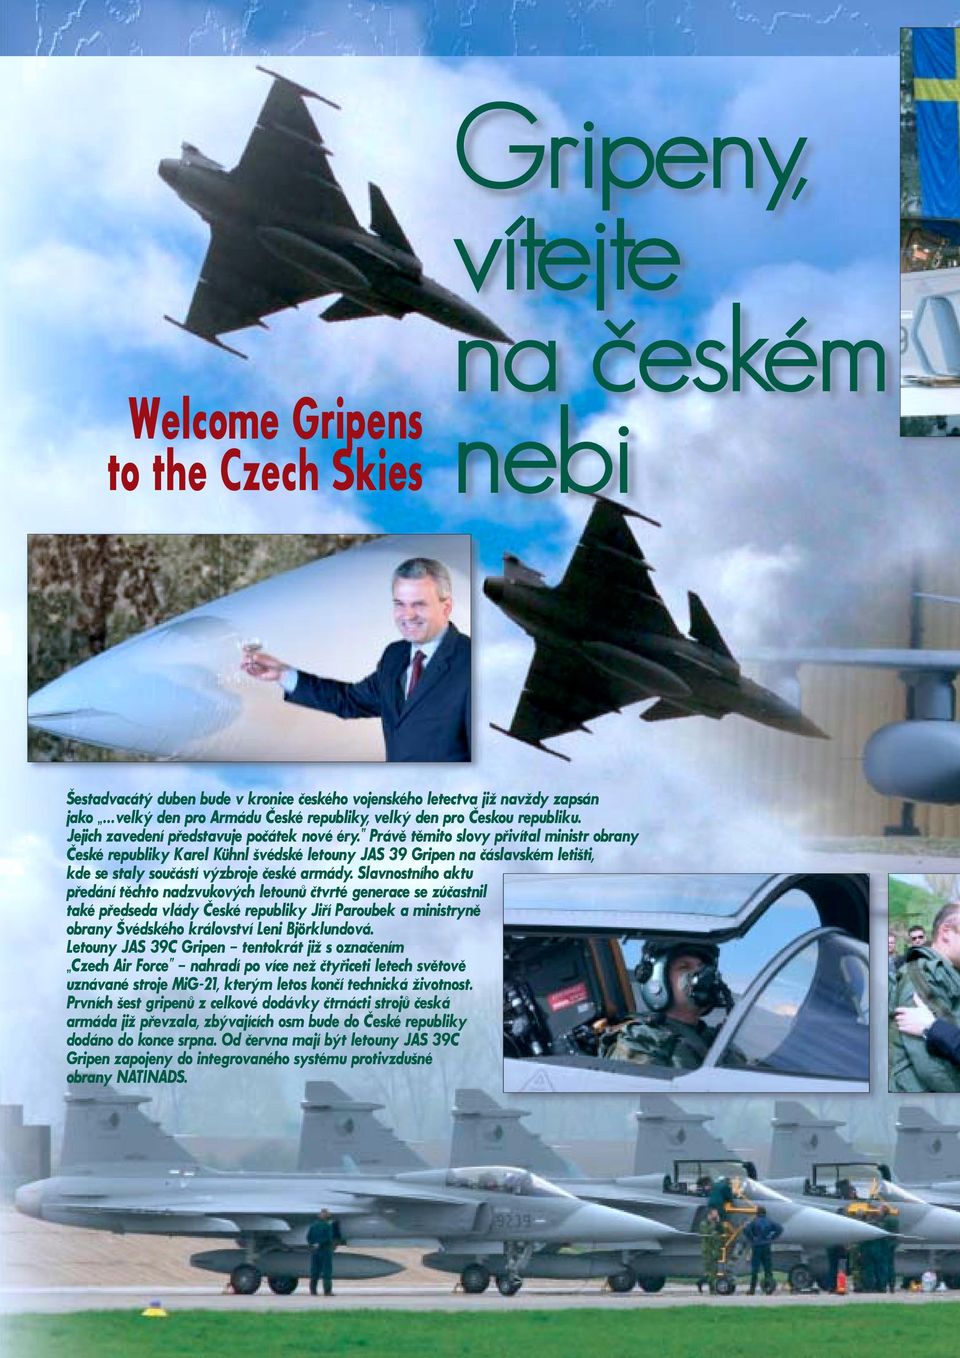 Právě těmito slovy přivítal ministr obrany České republiky Karel Kühnl švédské letouny JAS 39 Gripen na čáslavském letišti, kde se staly součástí výzbroje české armády.